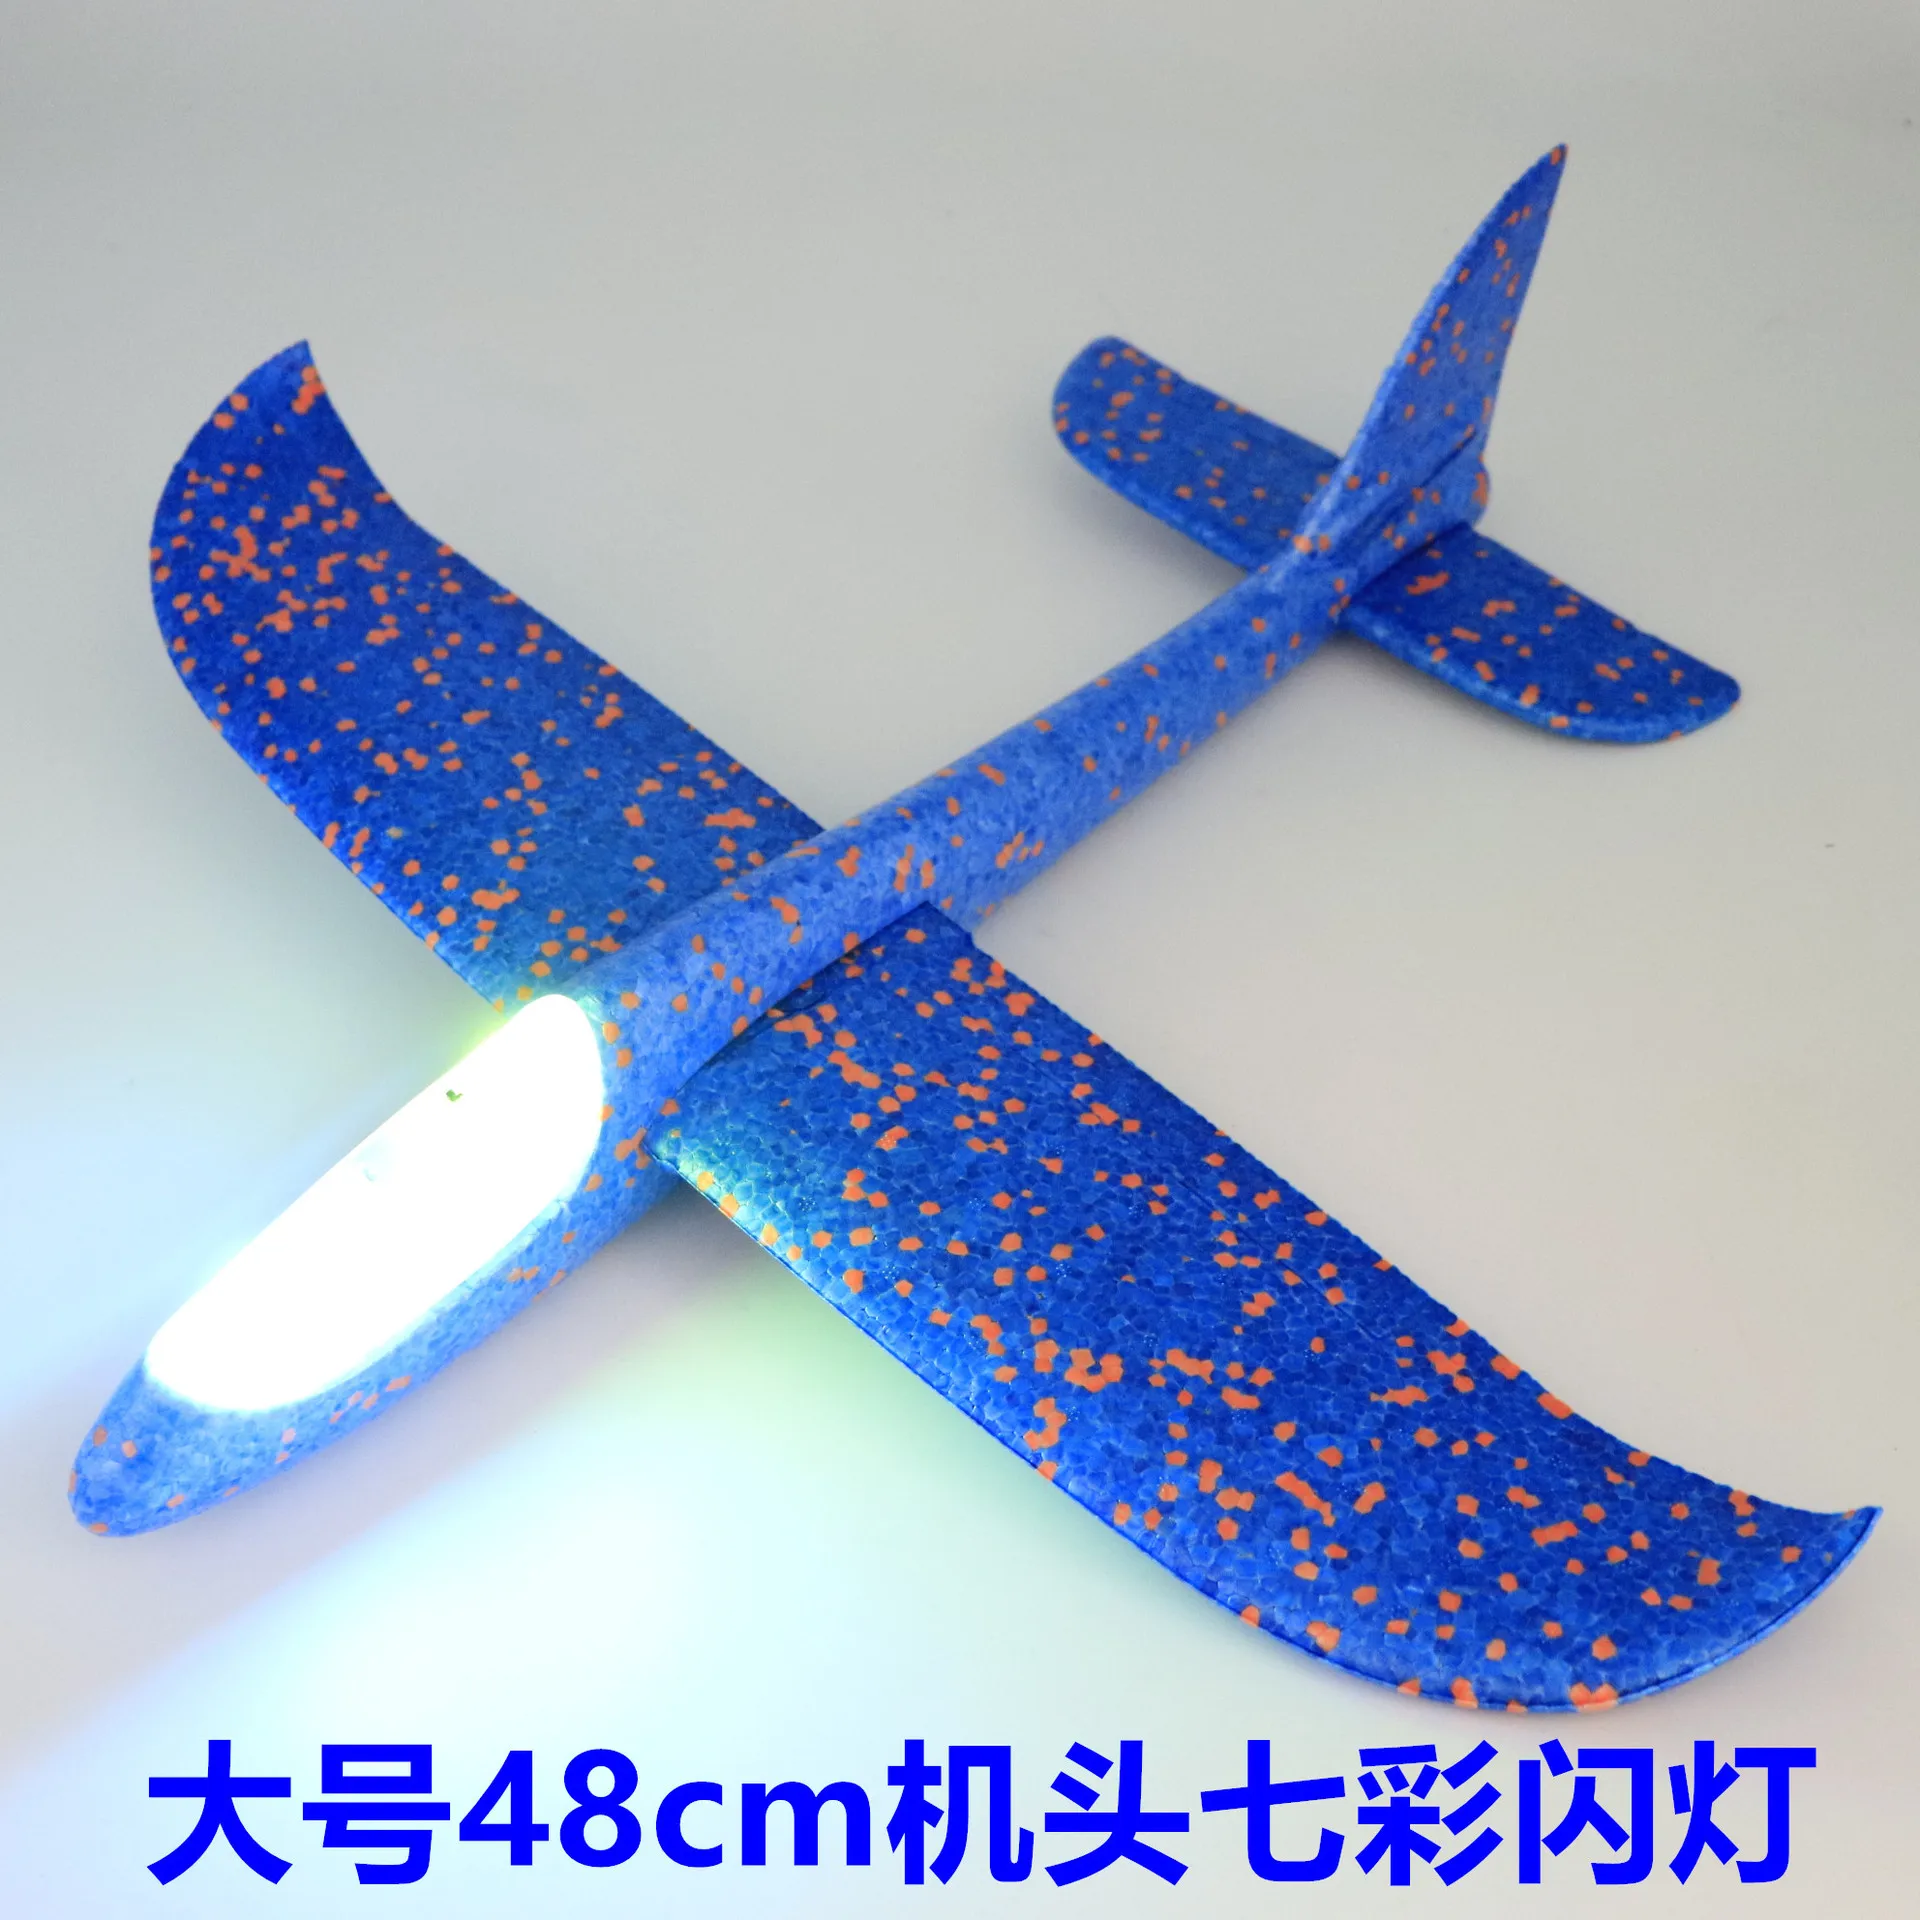 Планер самолеты ручной бросок Летающий DIY светодиодный мигающий самолет модель самолета Пена аэроплан вечерние игрушки для детей подарок для детей